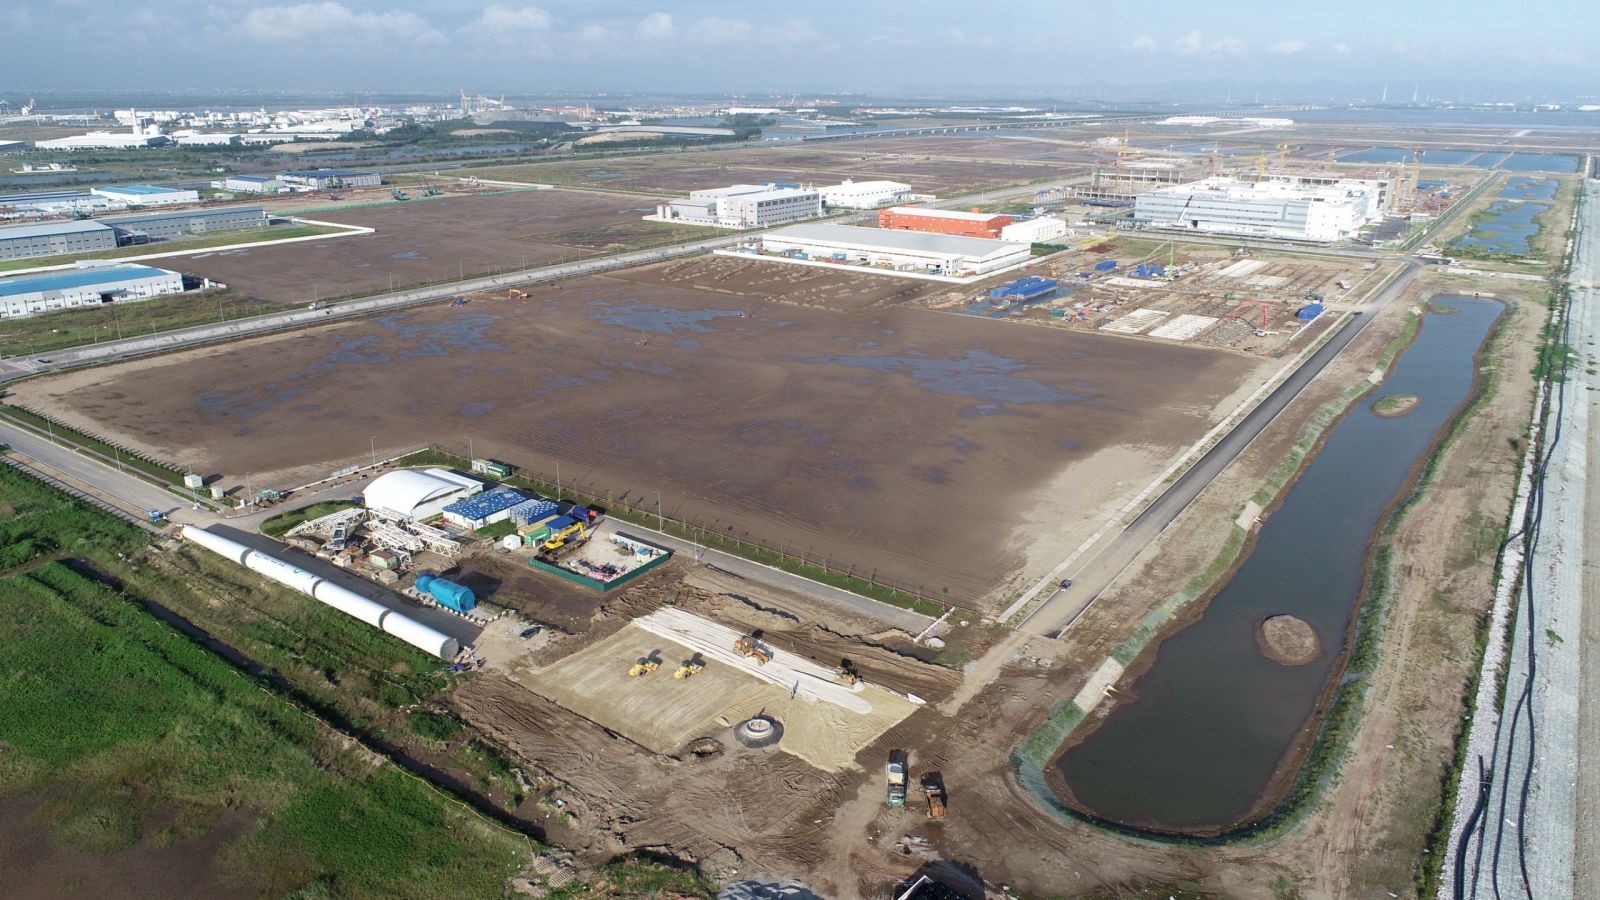 KCN Việt Nam, chủ đầu tư bất động sản công nghiệp hàng đầu Việt Nam chính thức nhận bàn giao hai lô đất tại khu công nghiệp DEEP C Hải Phòng II thuộc thành phố Hải Phòng vào ngày 27 tháng 10 năm 2021 vừa qua. Hai